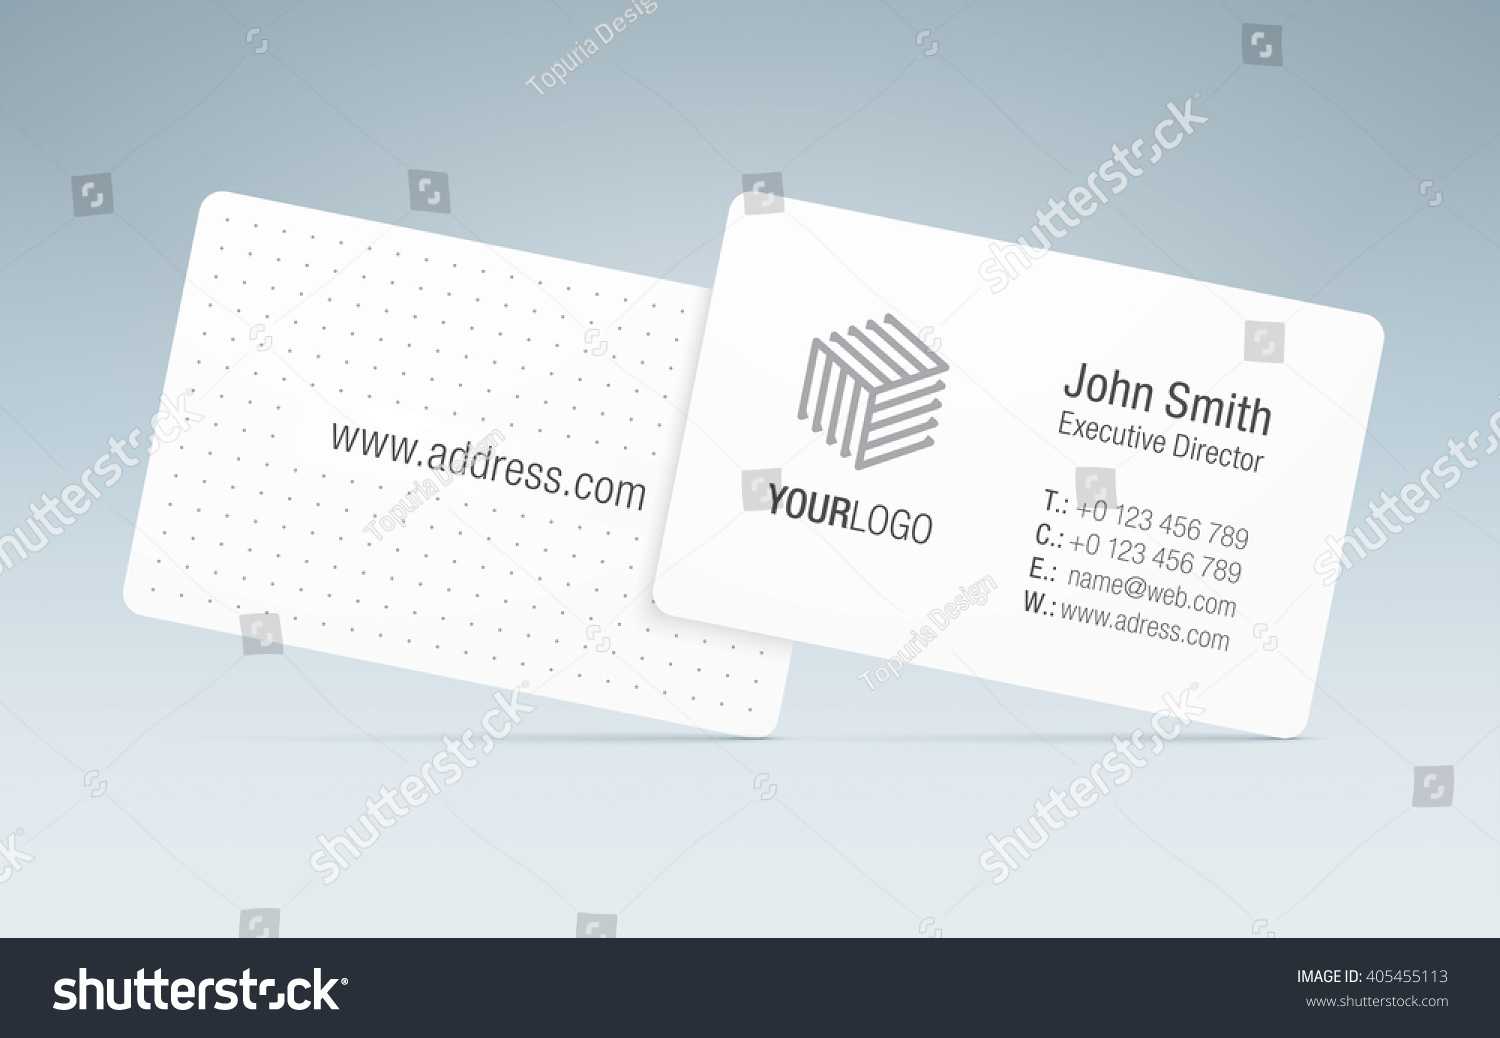 Vector Business Card Template Sleek Business Stock Vector With Generic Business Card Template